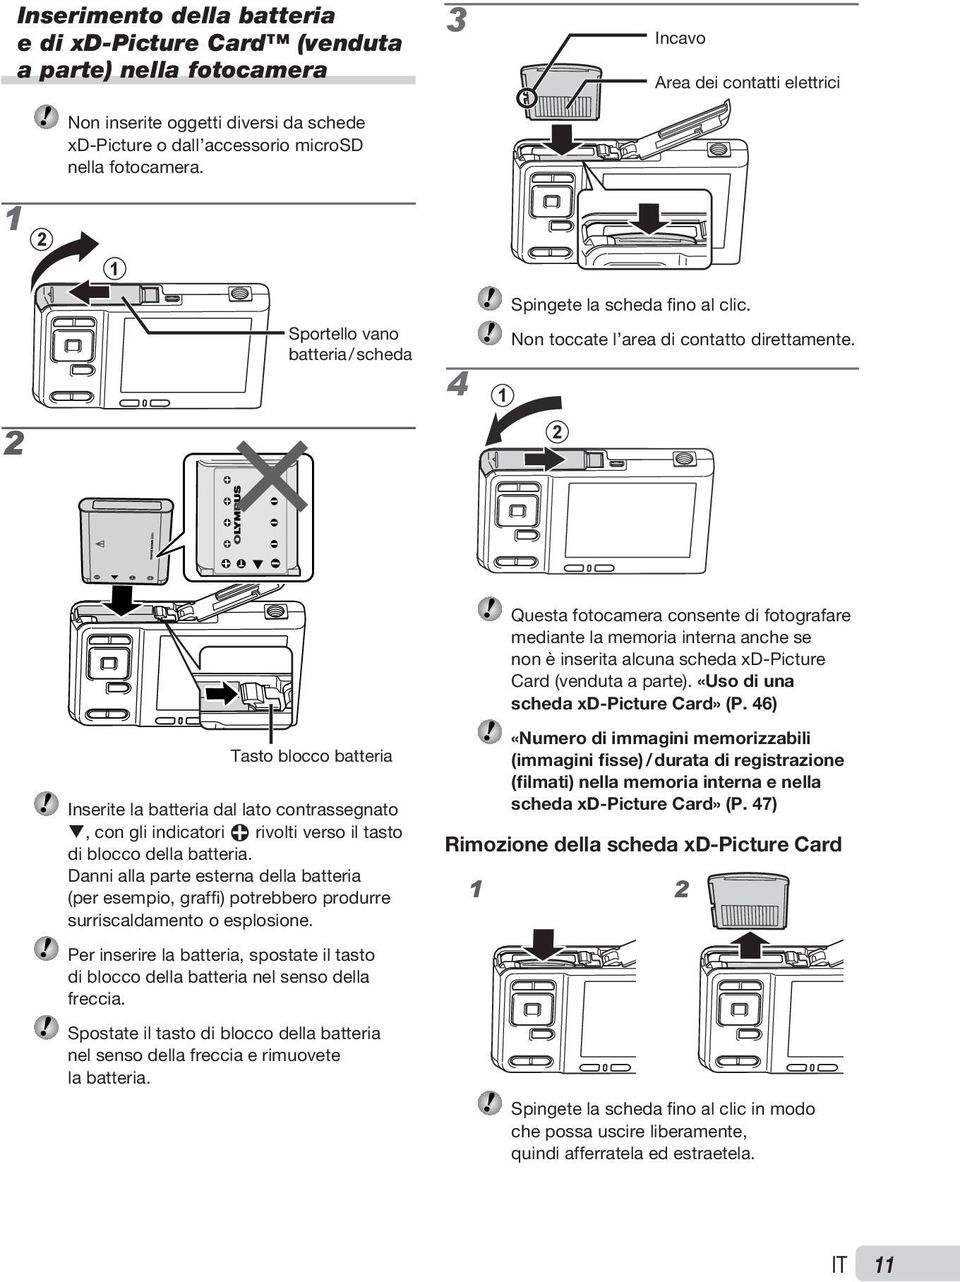 4 1 2 2 Questa fotocamera consente di fotografare mediante la memoria interna anche se non è inserita alcuna scheda xd Picture Card (venduta a parte). «Uso di una scheda xd Picture Card» (P.